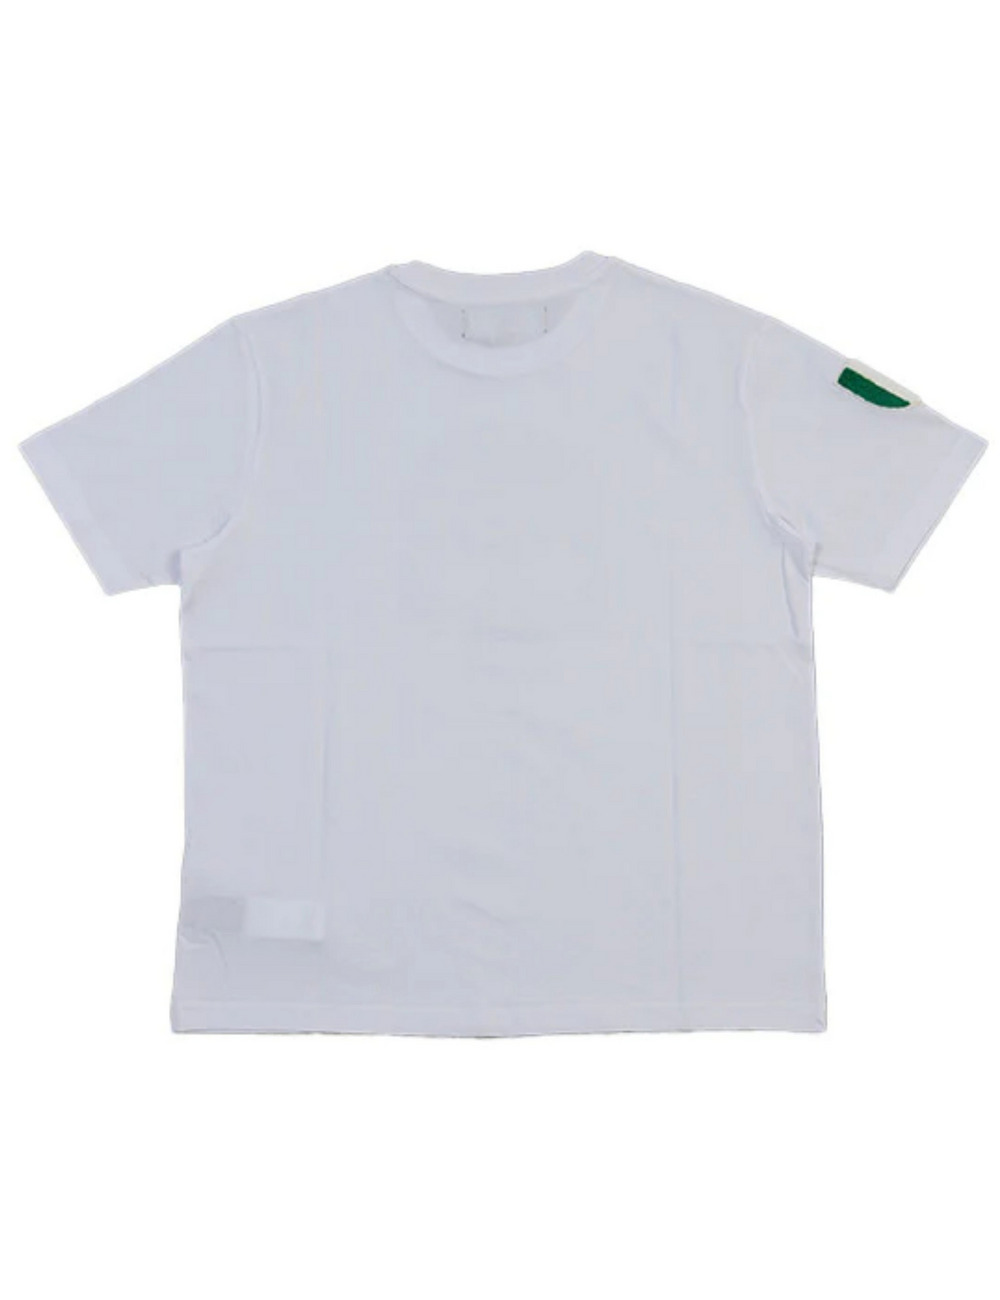 アイコンスカルTシャツ(半袖) / ICON SKULL T SHIRT 詳細画像 ホワイト 2